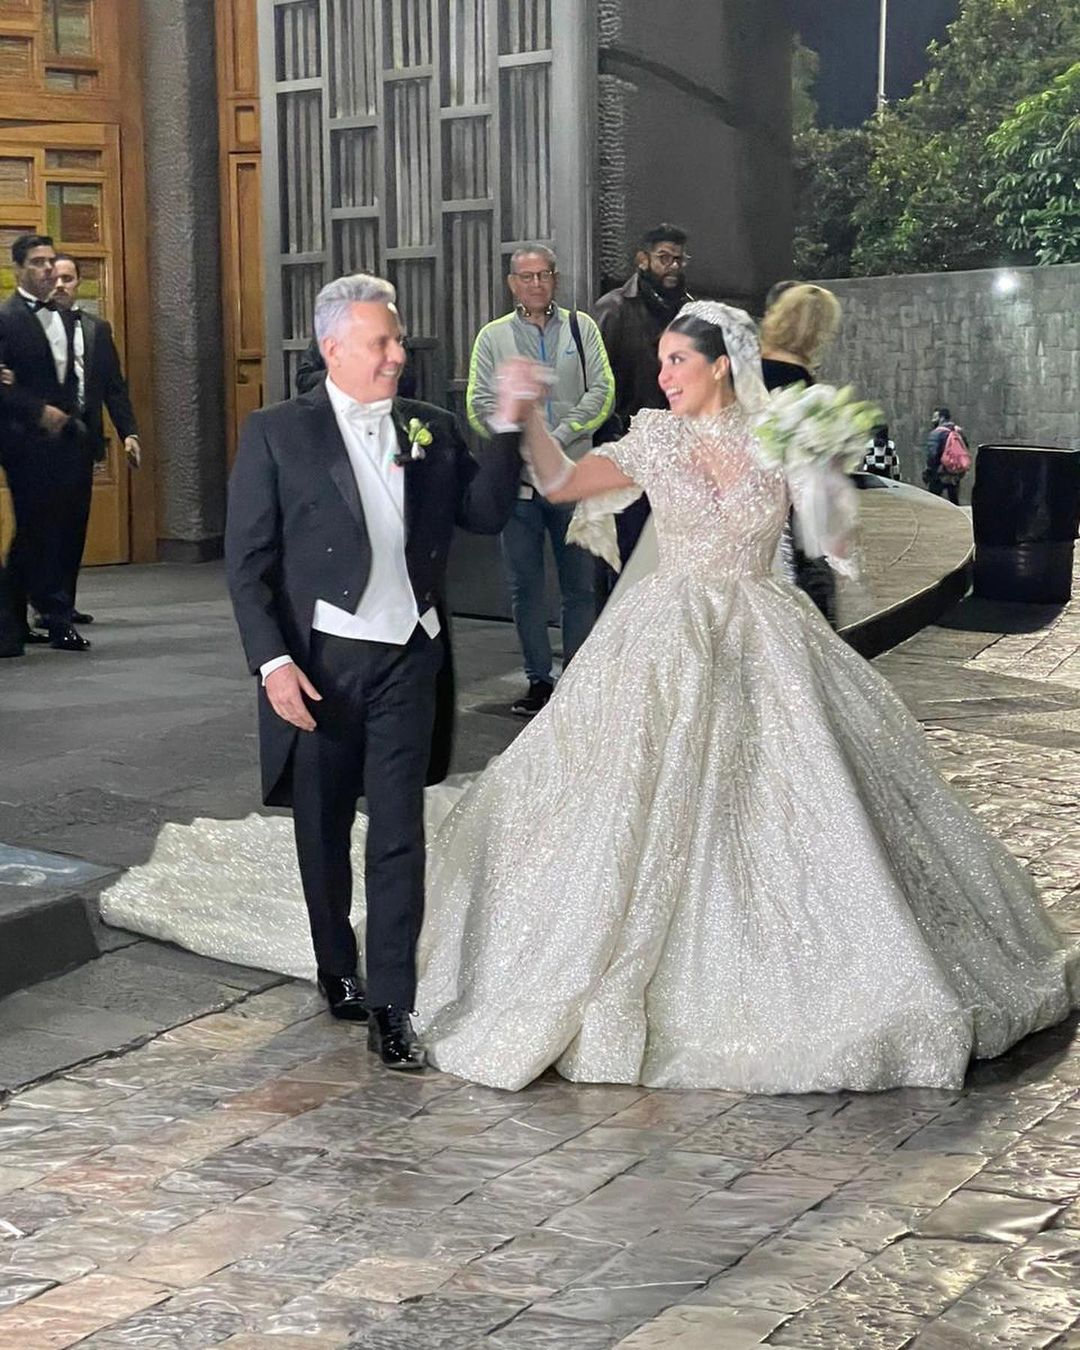 Momentos de la boda entre Alexis Ayala y Cinthia Aparicio